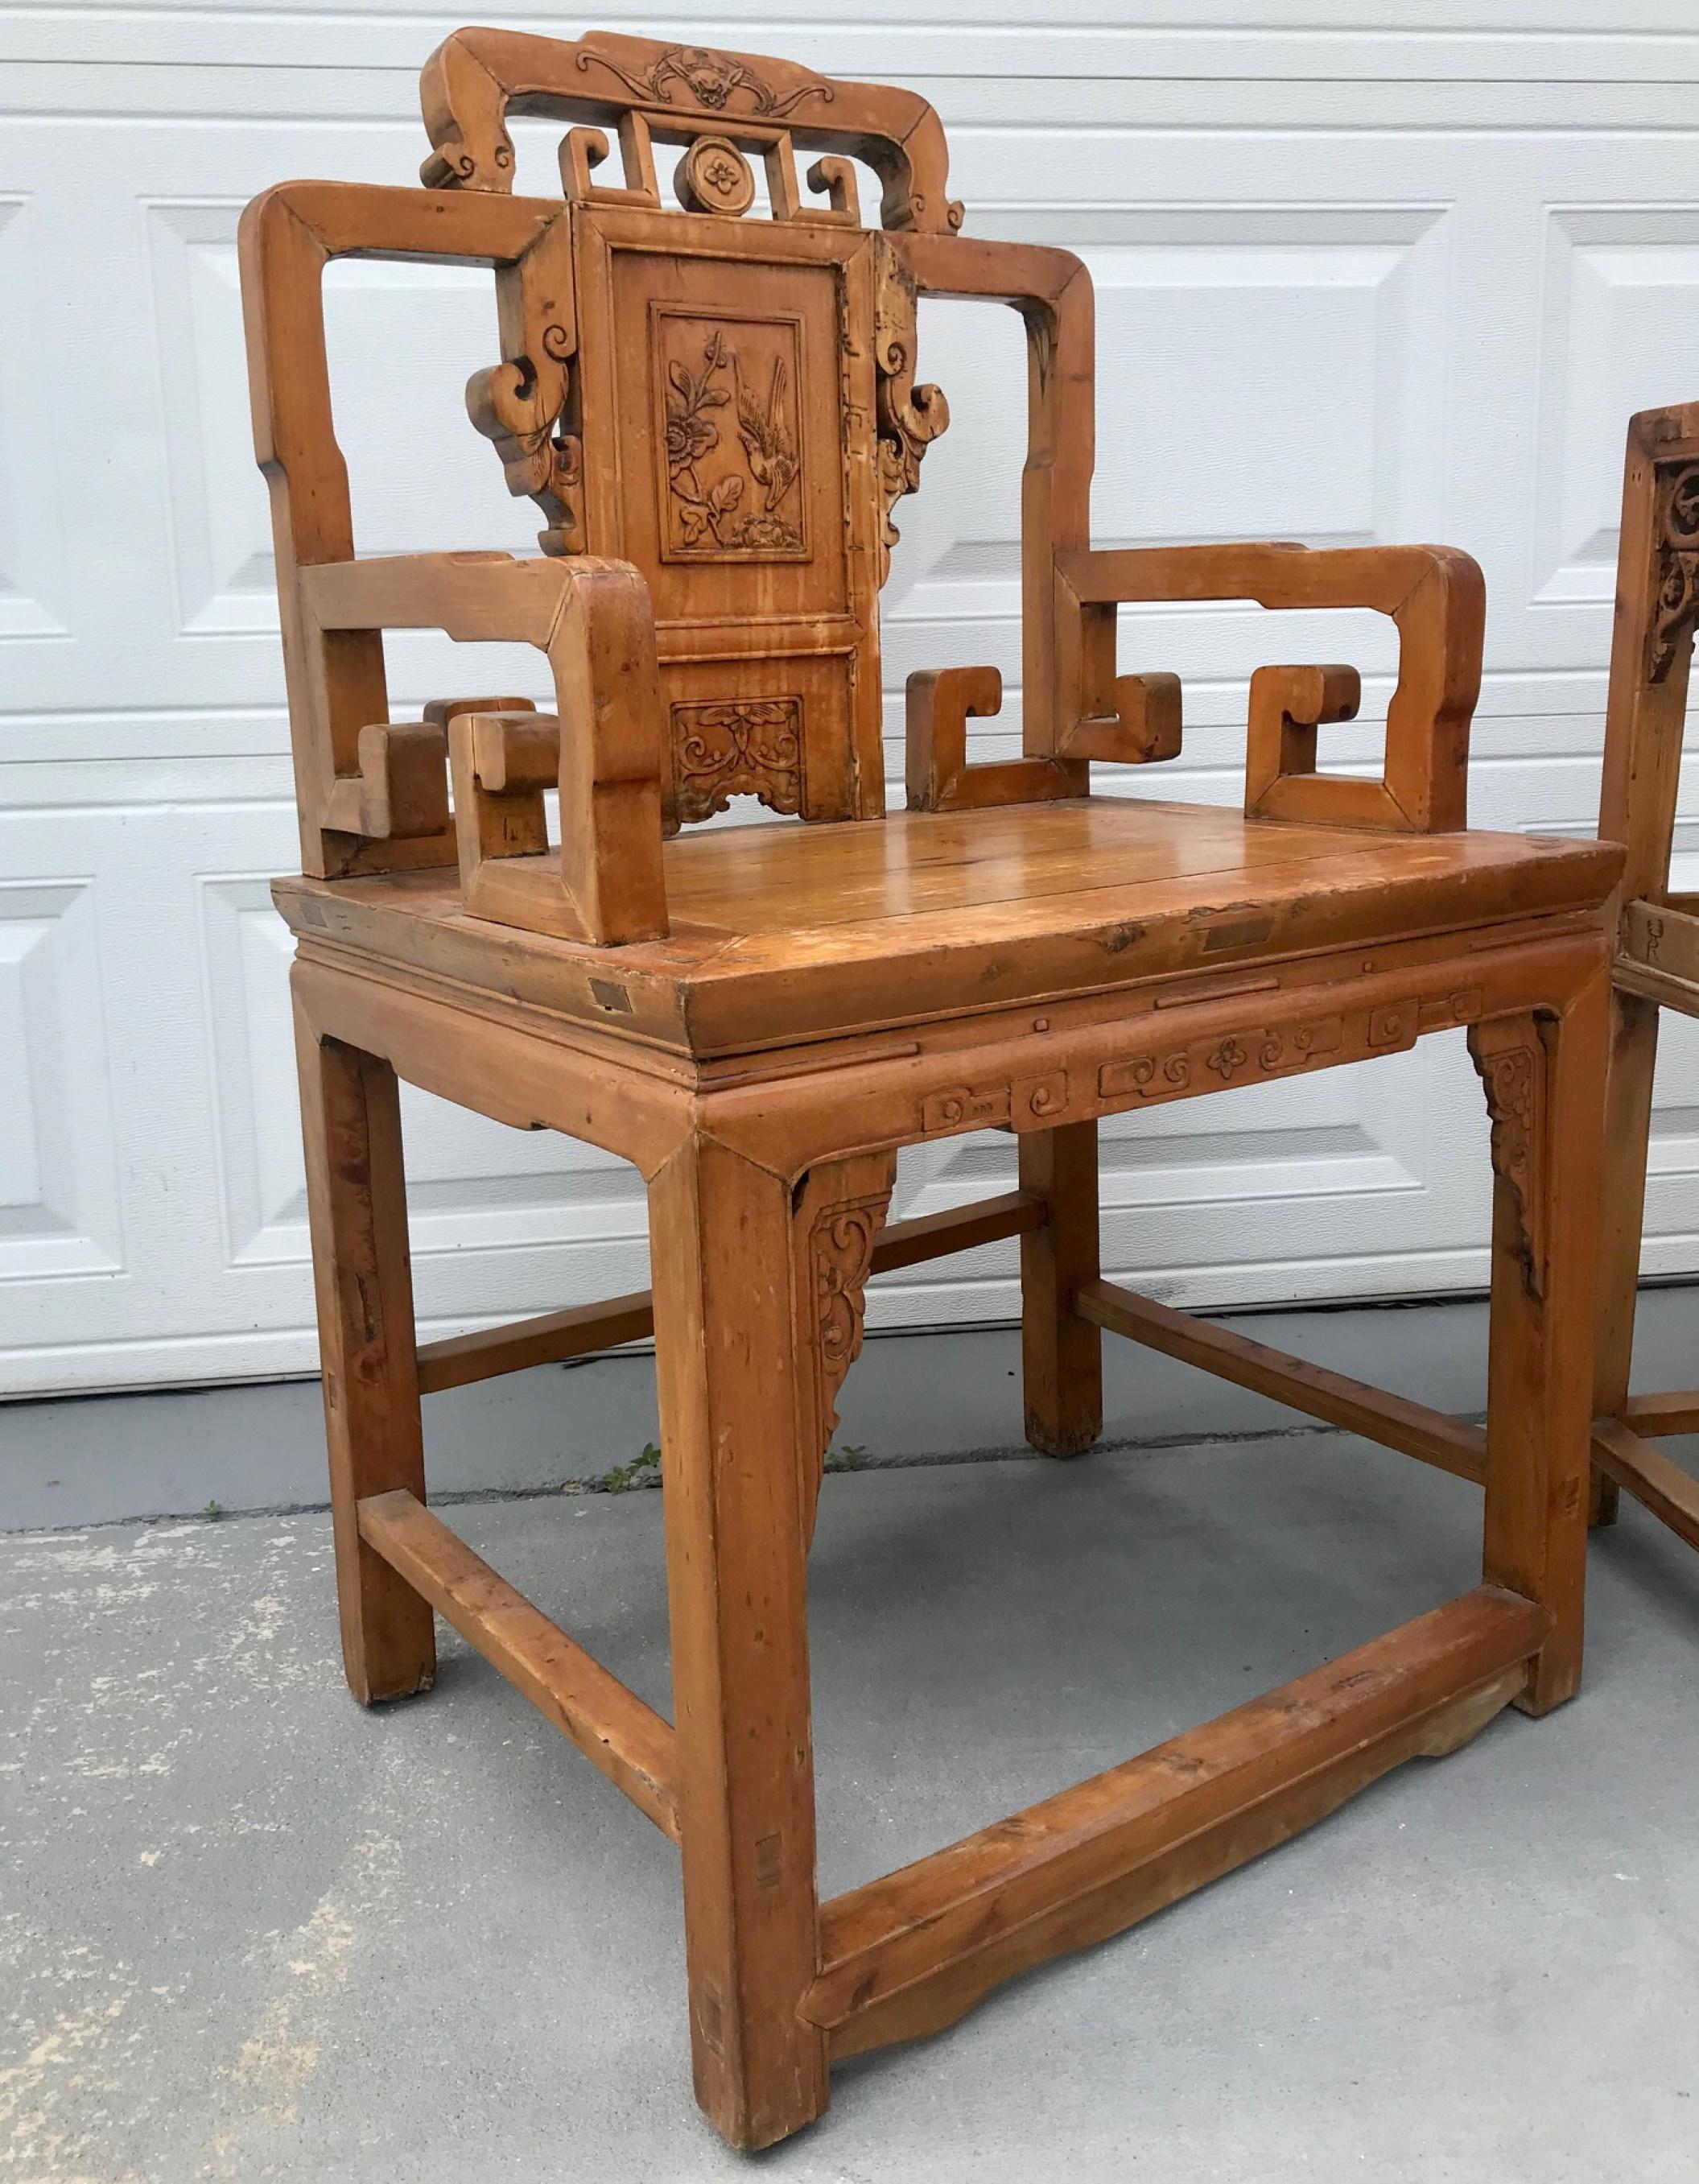 Ensemble de 3 fauteuils et table de la dynastie Qing.

Ces authentiques fauteuils anciens chinois à dossier grillagé, sculptés à la main, sont des chefs-d'œuvre du mobilier de la dynastie Qing. Les chaises présentent un motif de clé archaïque.